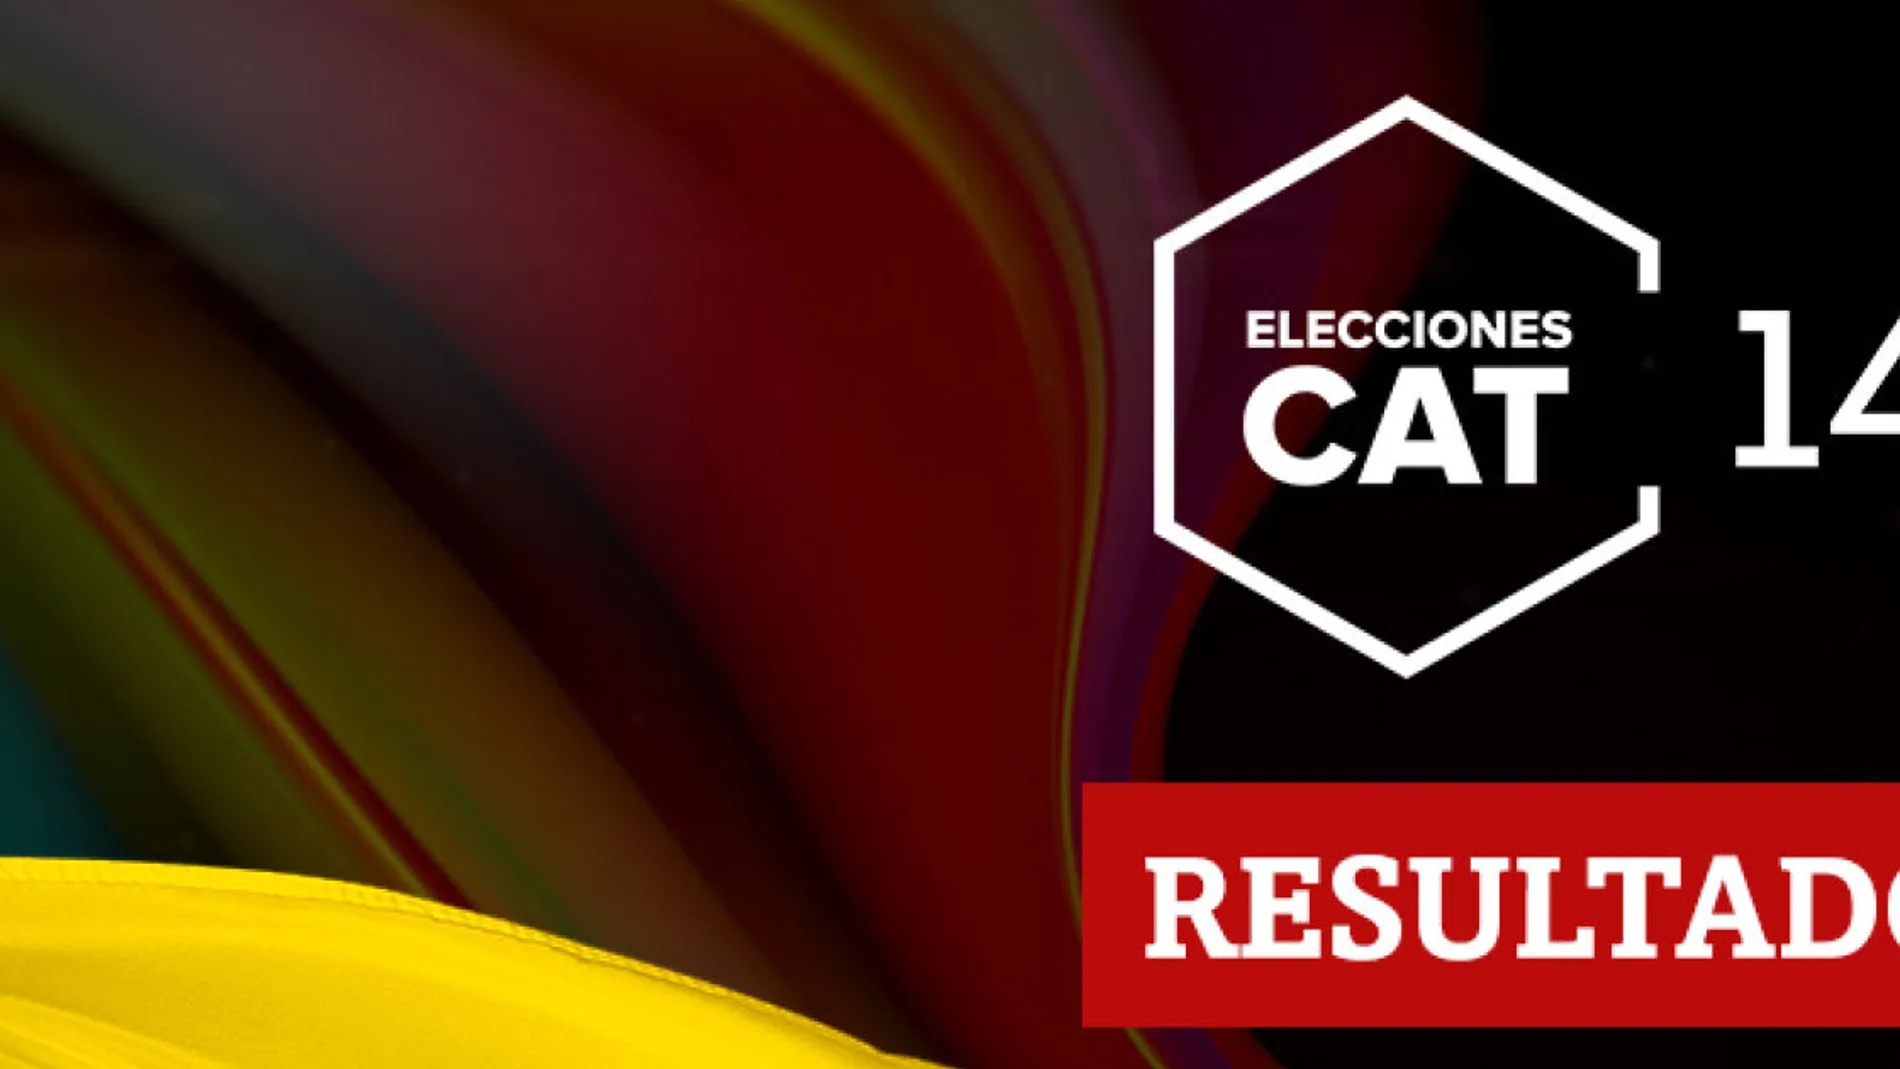 Resultados en Pardines de las elecciones catalanas del 14F 2021